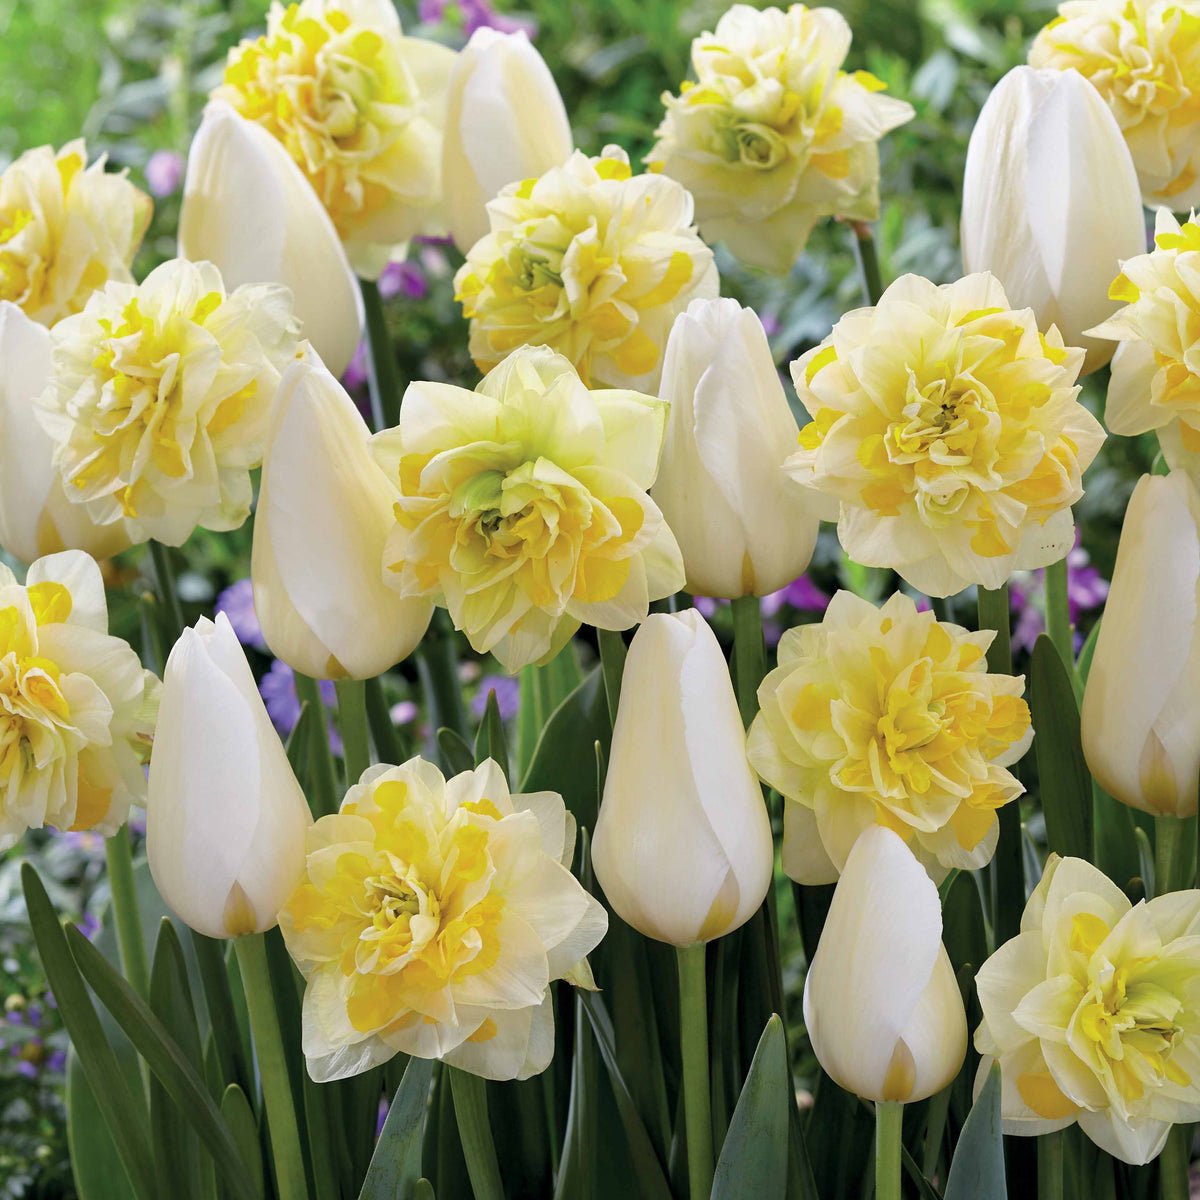 20 Tulipes Françoise et Narcisses Sweet Pomponette en mélange - Tulipa françoise, narcissus sweet pomonette - Plantes